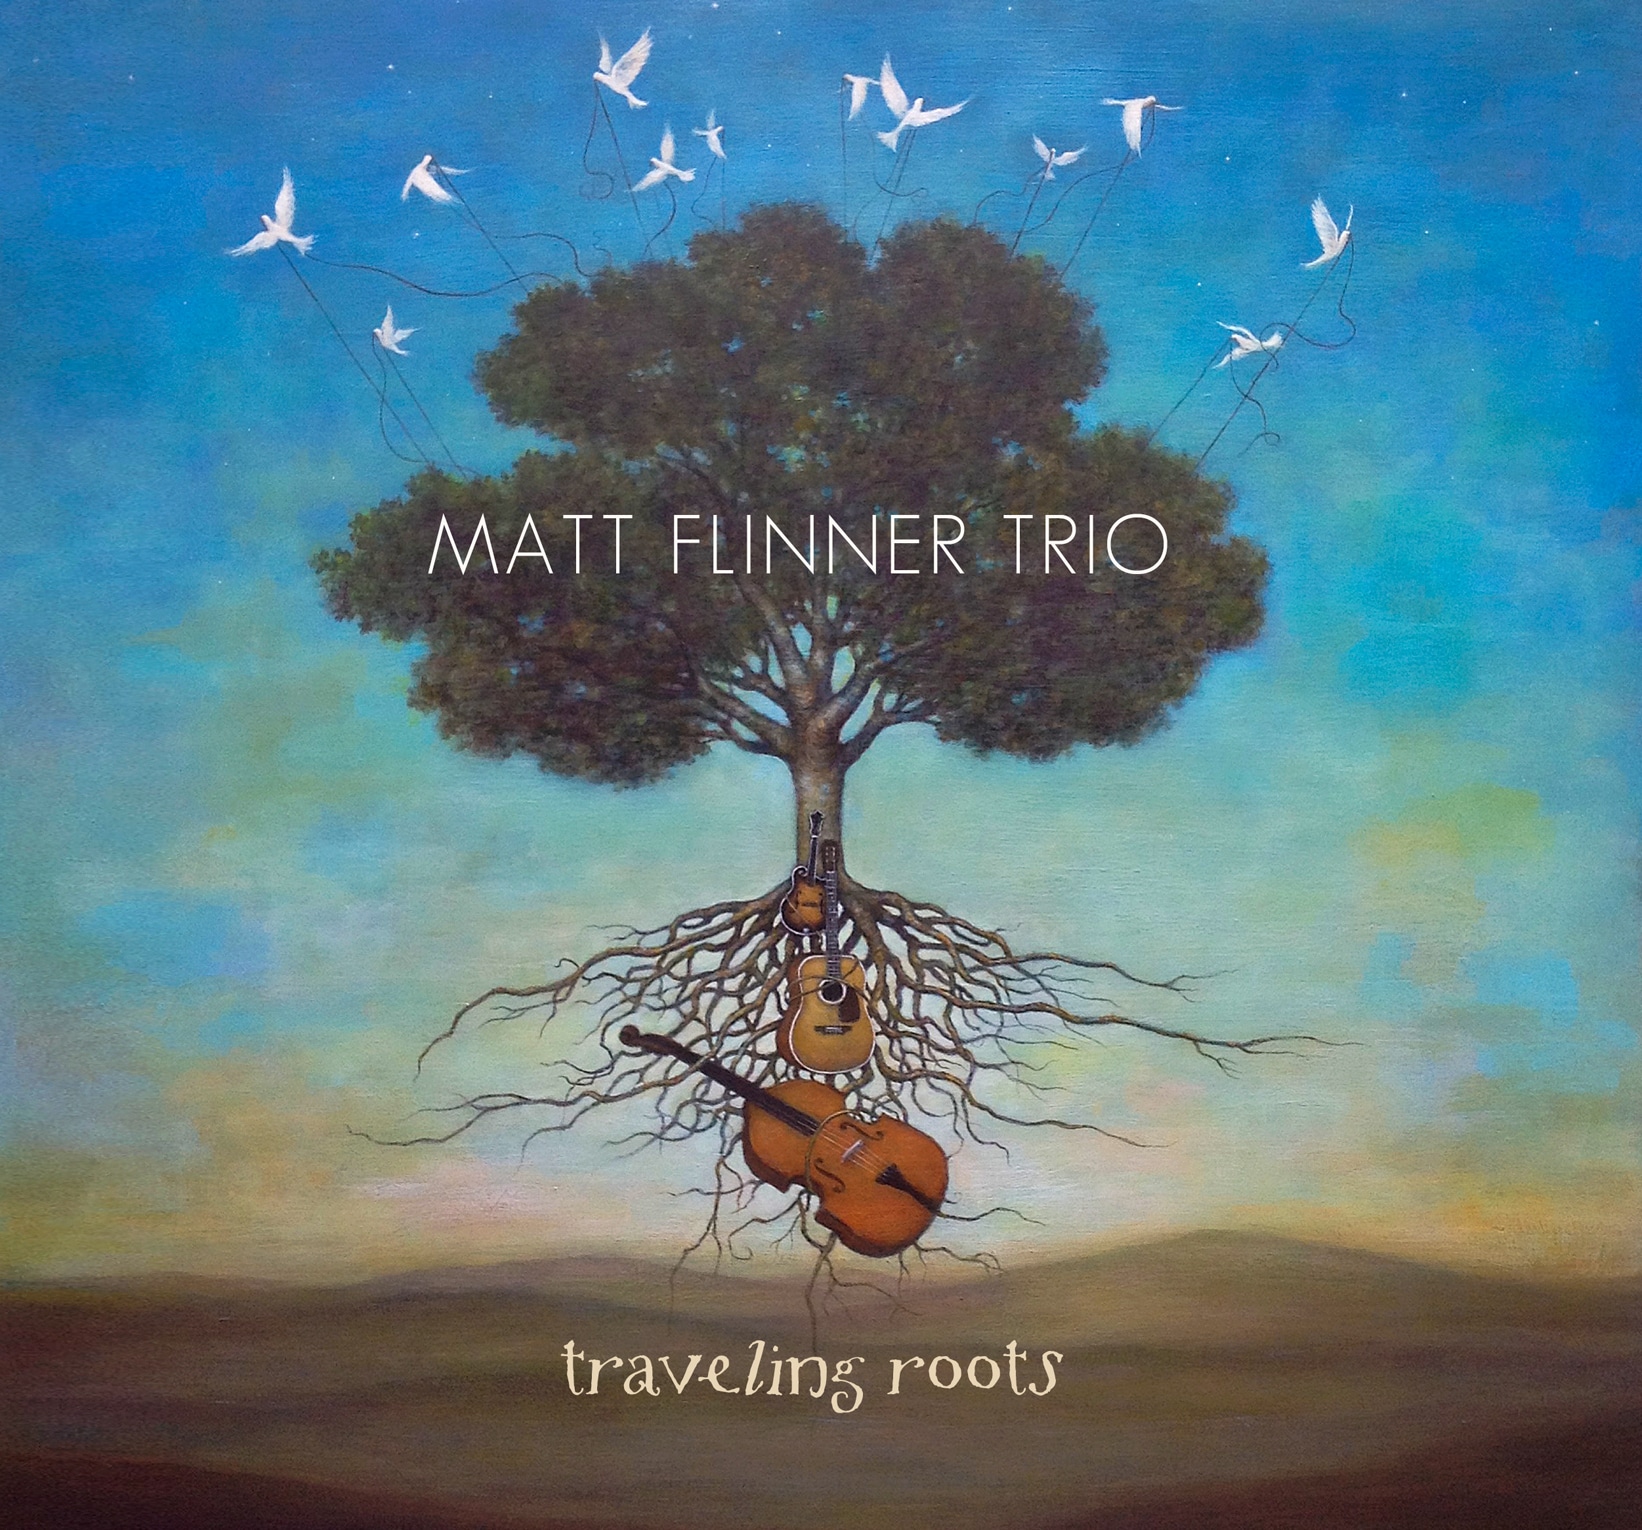 Matt Flinner Trio: Traveling Roots